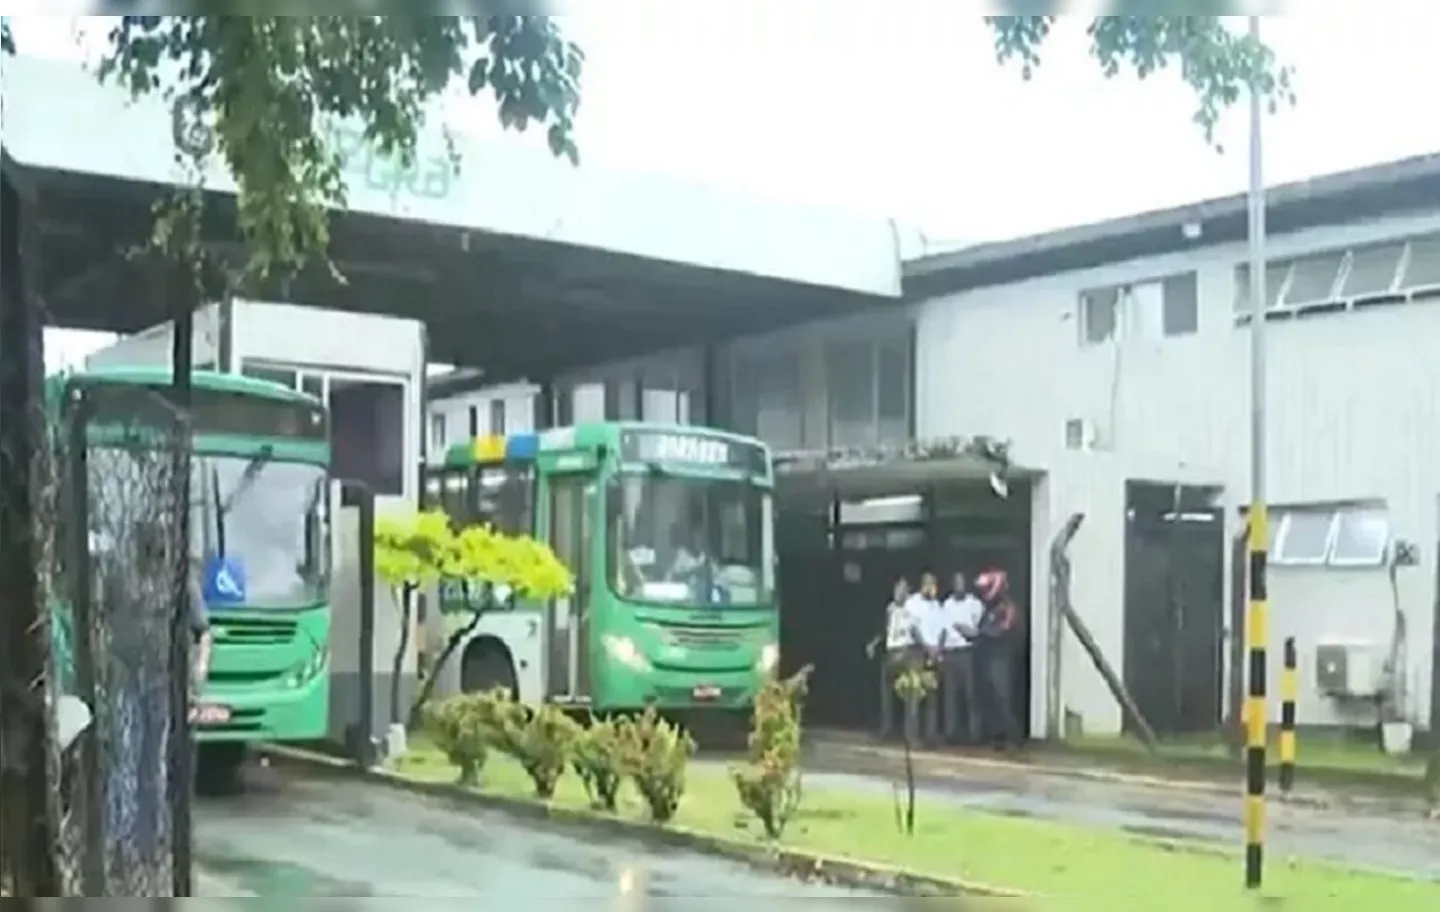 A Polícia Militar interviu na situação e os ônibus foram liberados às 6h30